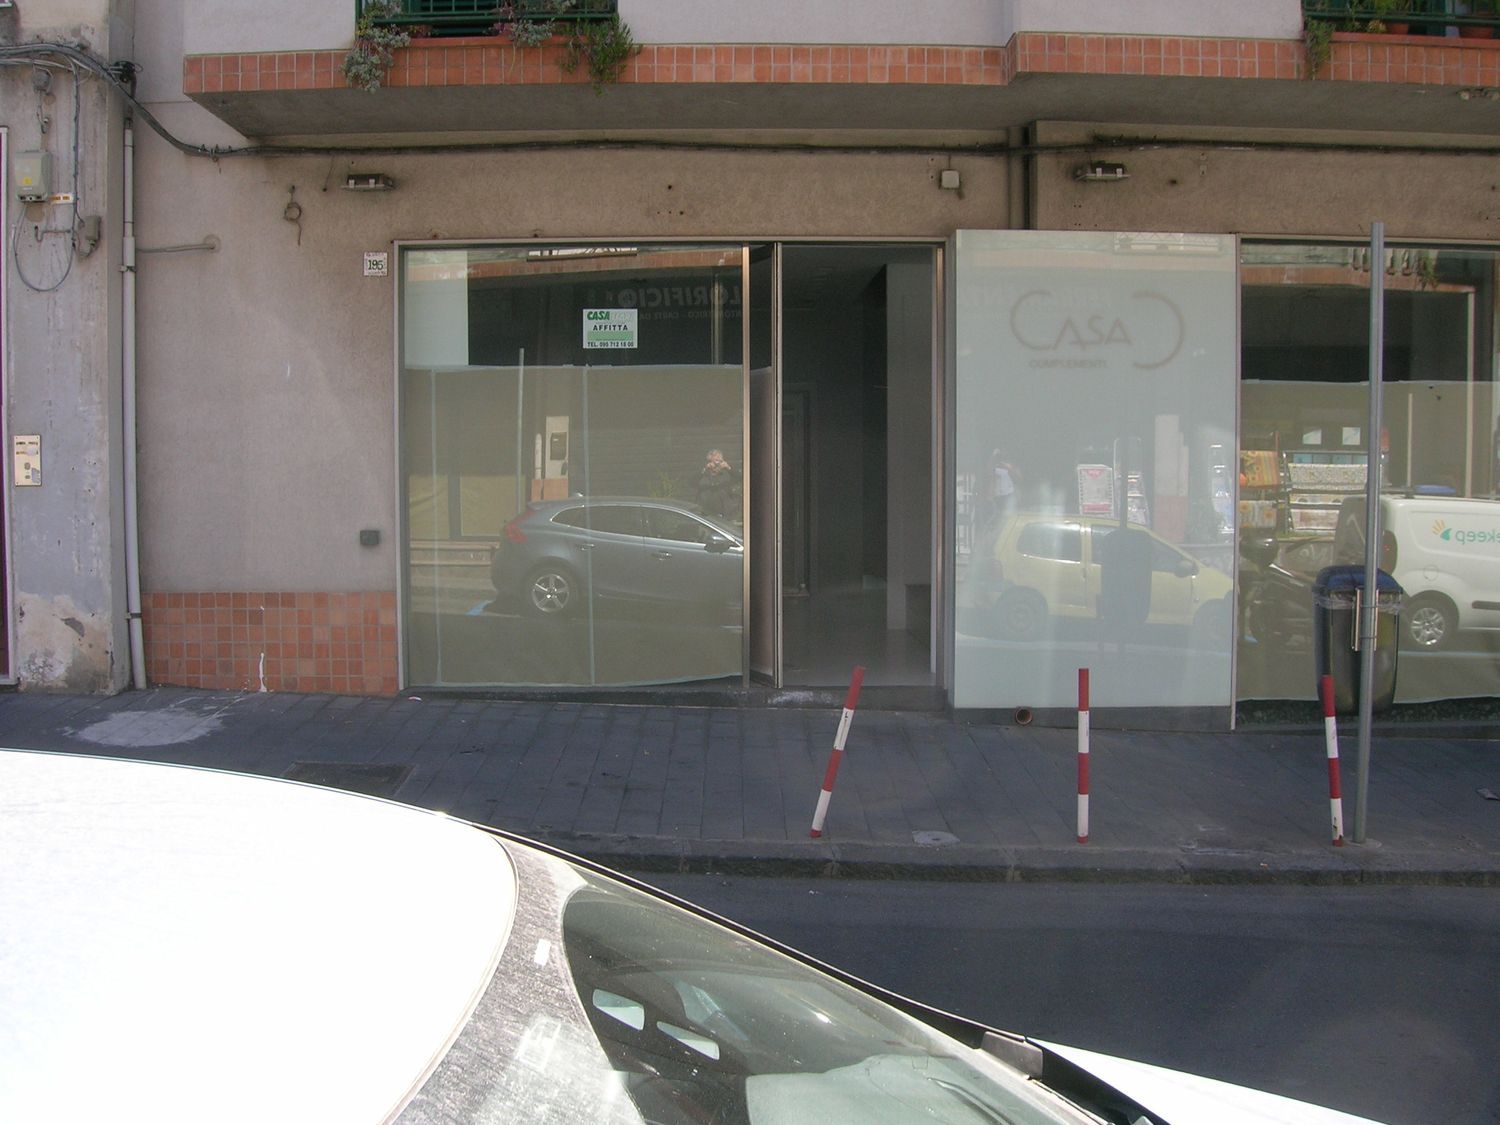 Immobile Commerciale in affitto a Aci Castello, 9999 locali, prezzo € 800 | PortaleAgenzieImmobiliari.it